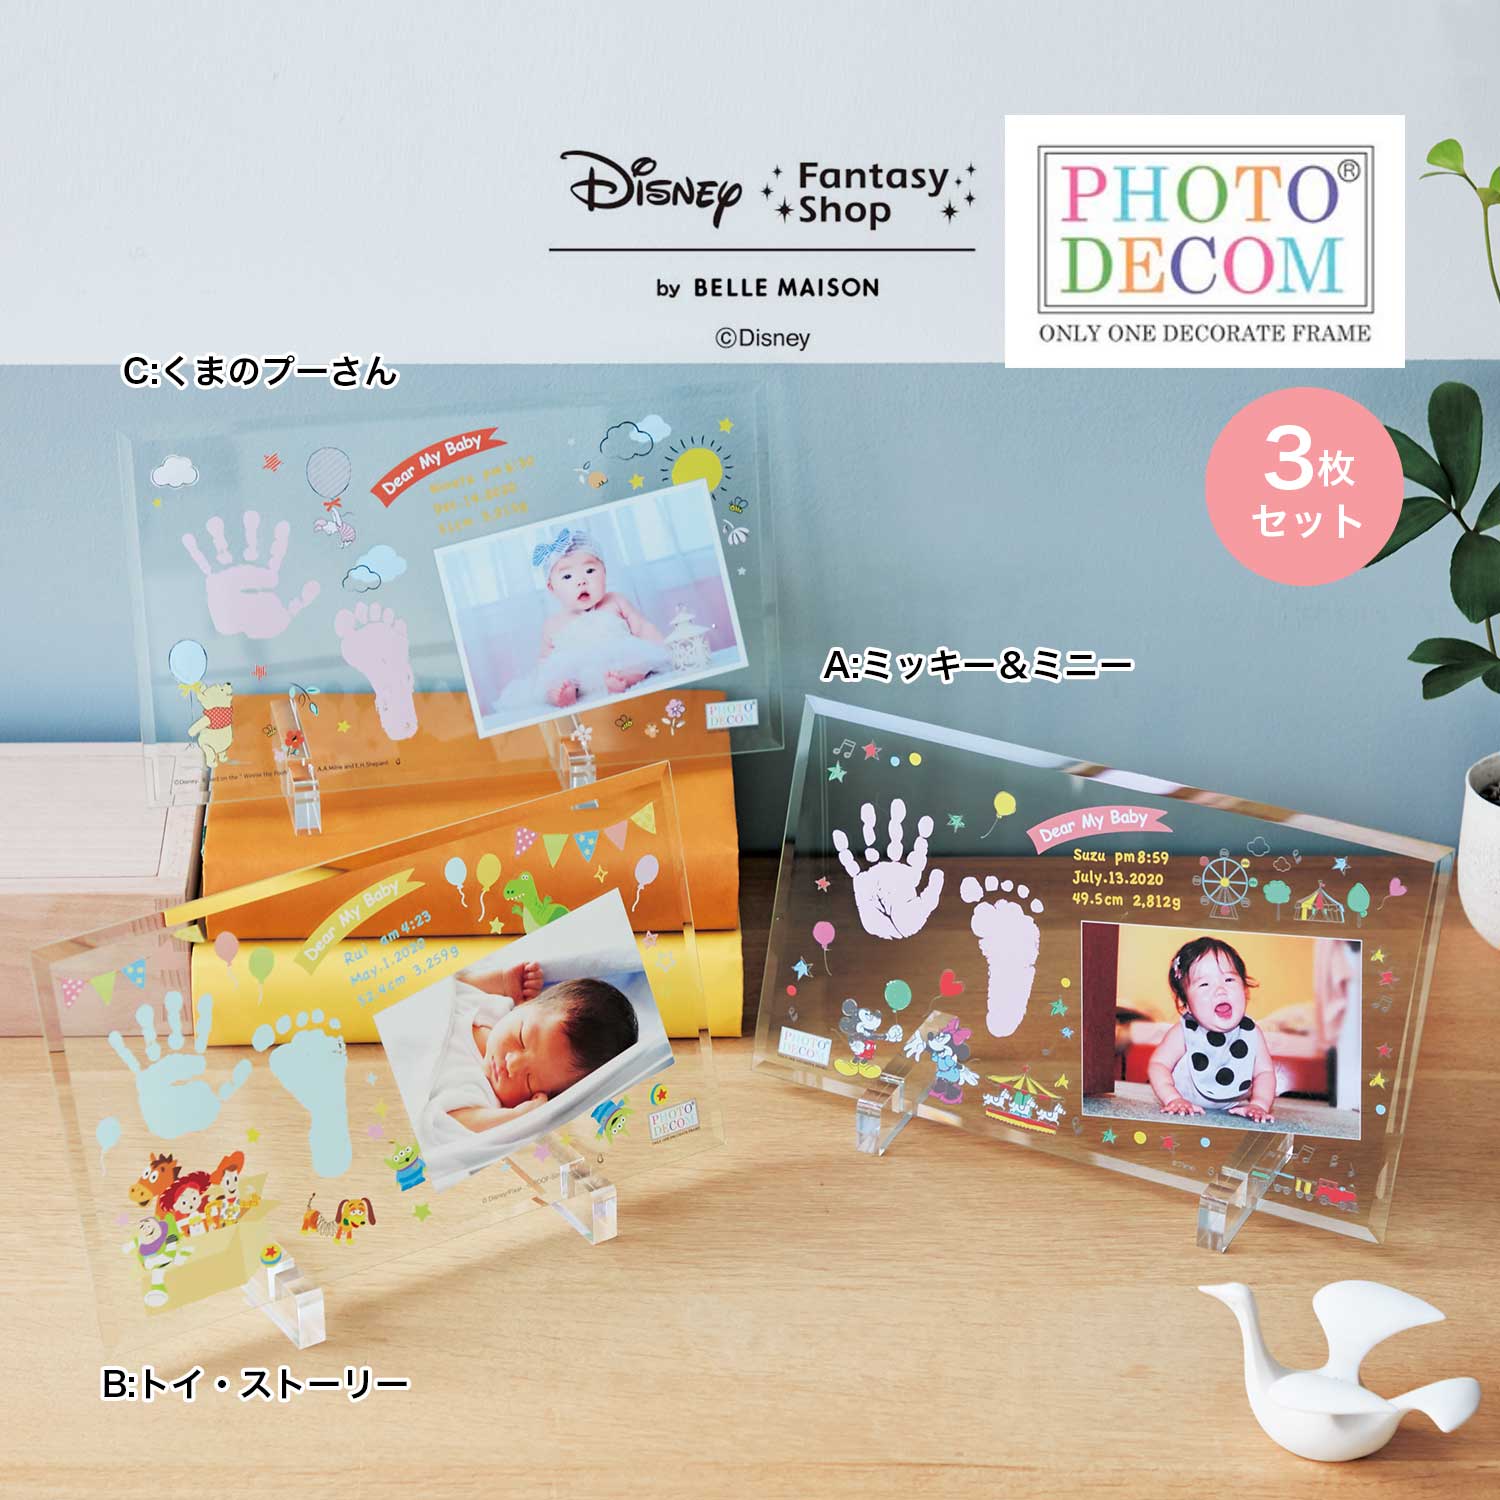 【ディズニー/Disney】【送料無料】 ディズニー フォトデコム・クリアガラス手形足形メモリアルお仕立券3枚セット画像